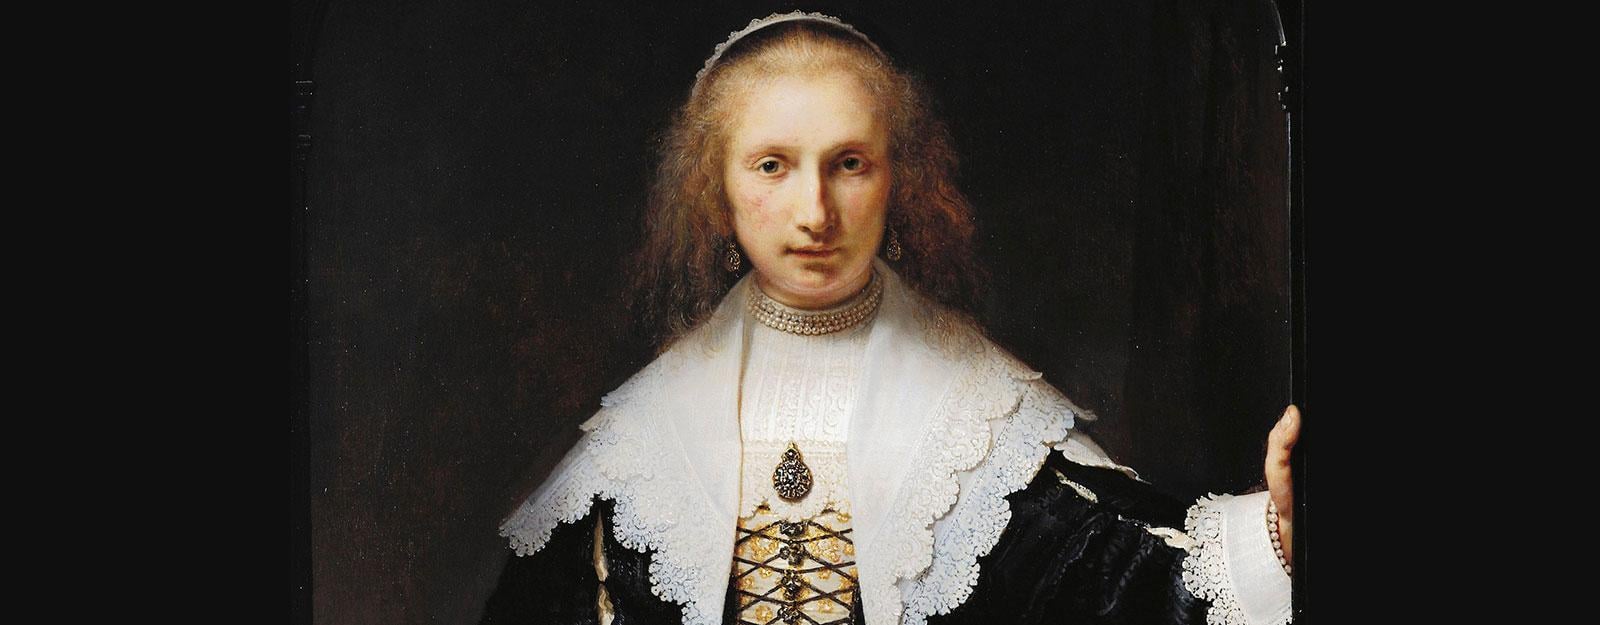 'Agatha Bas' by Rembrandt van Rijn